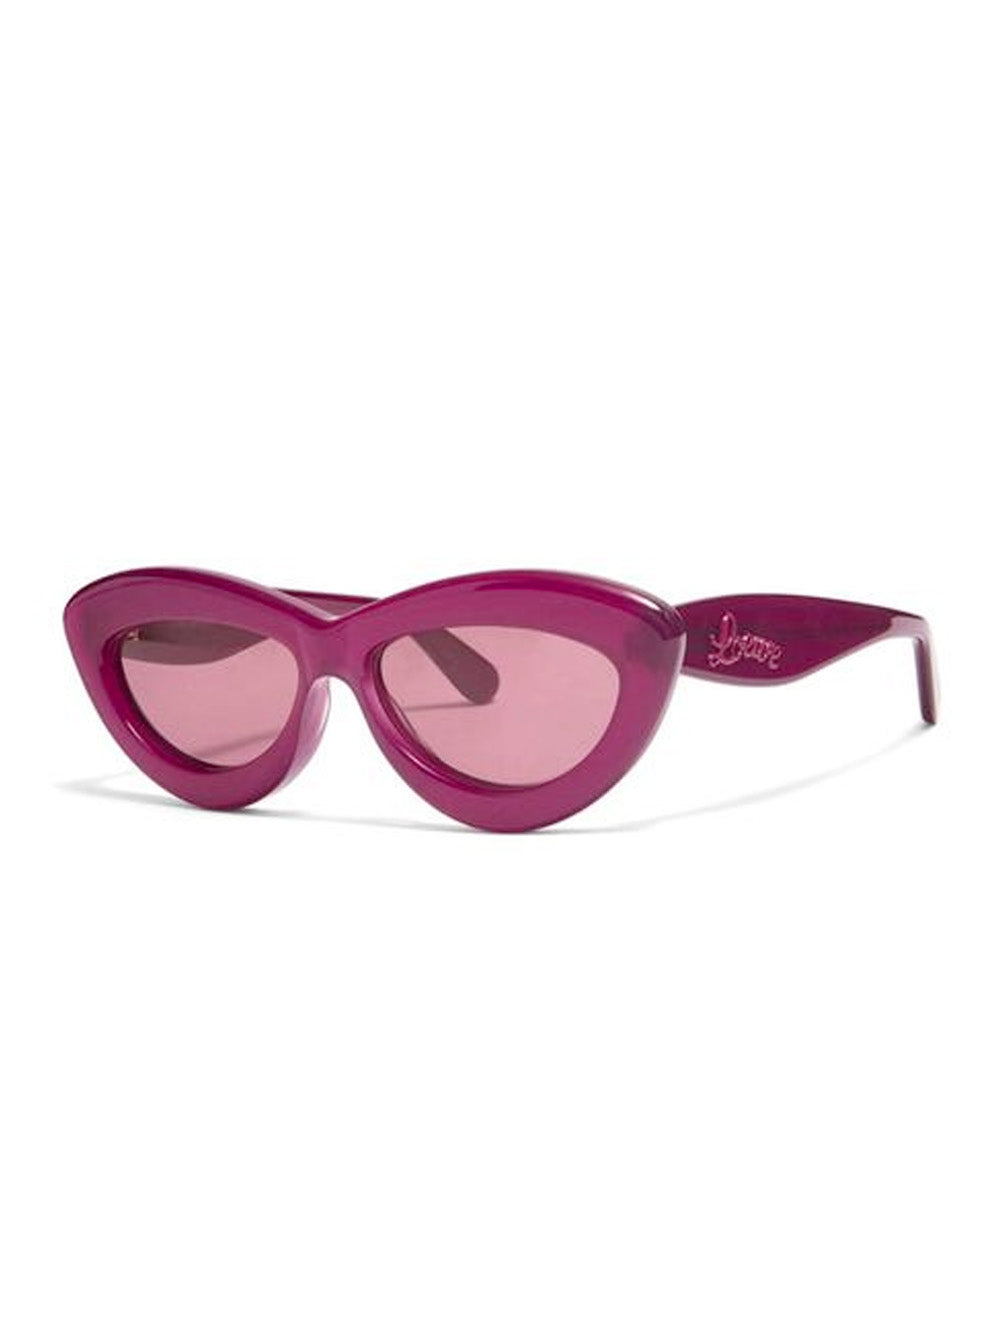 Cat Eye Sunglasses in Pink - Loewe